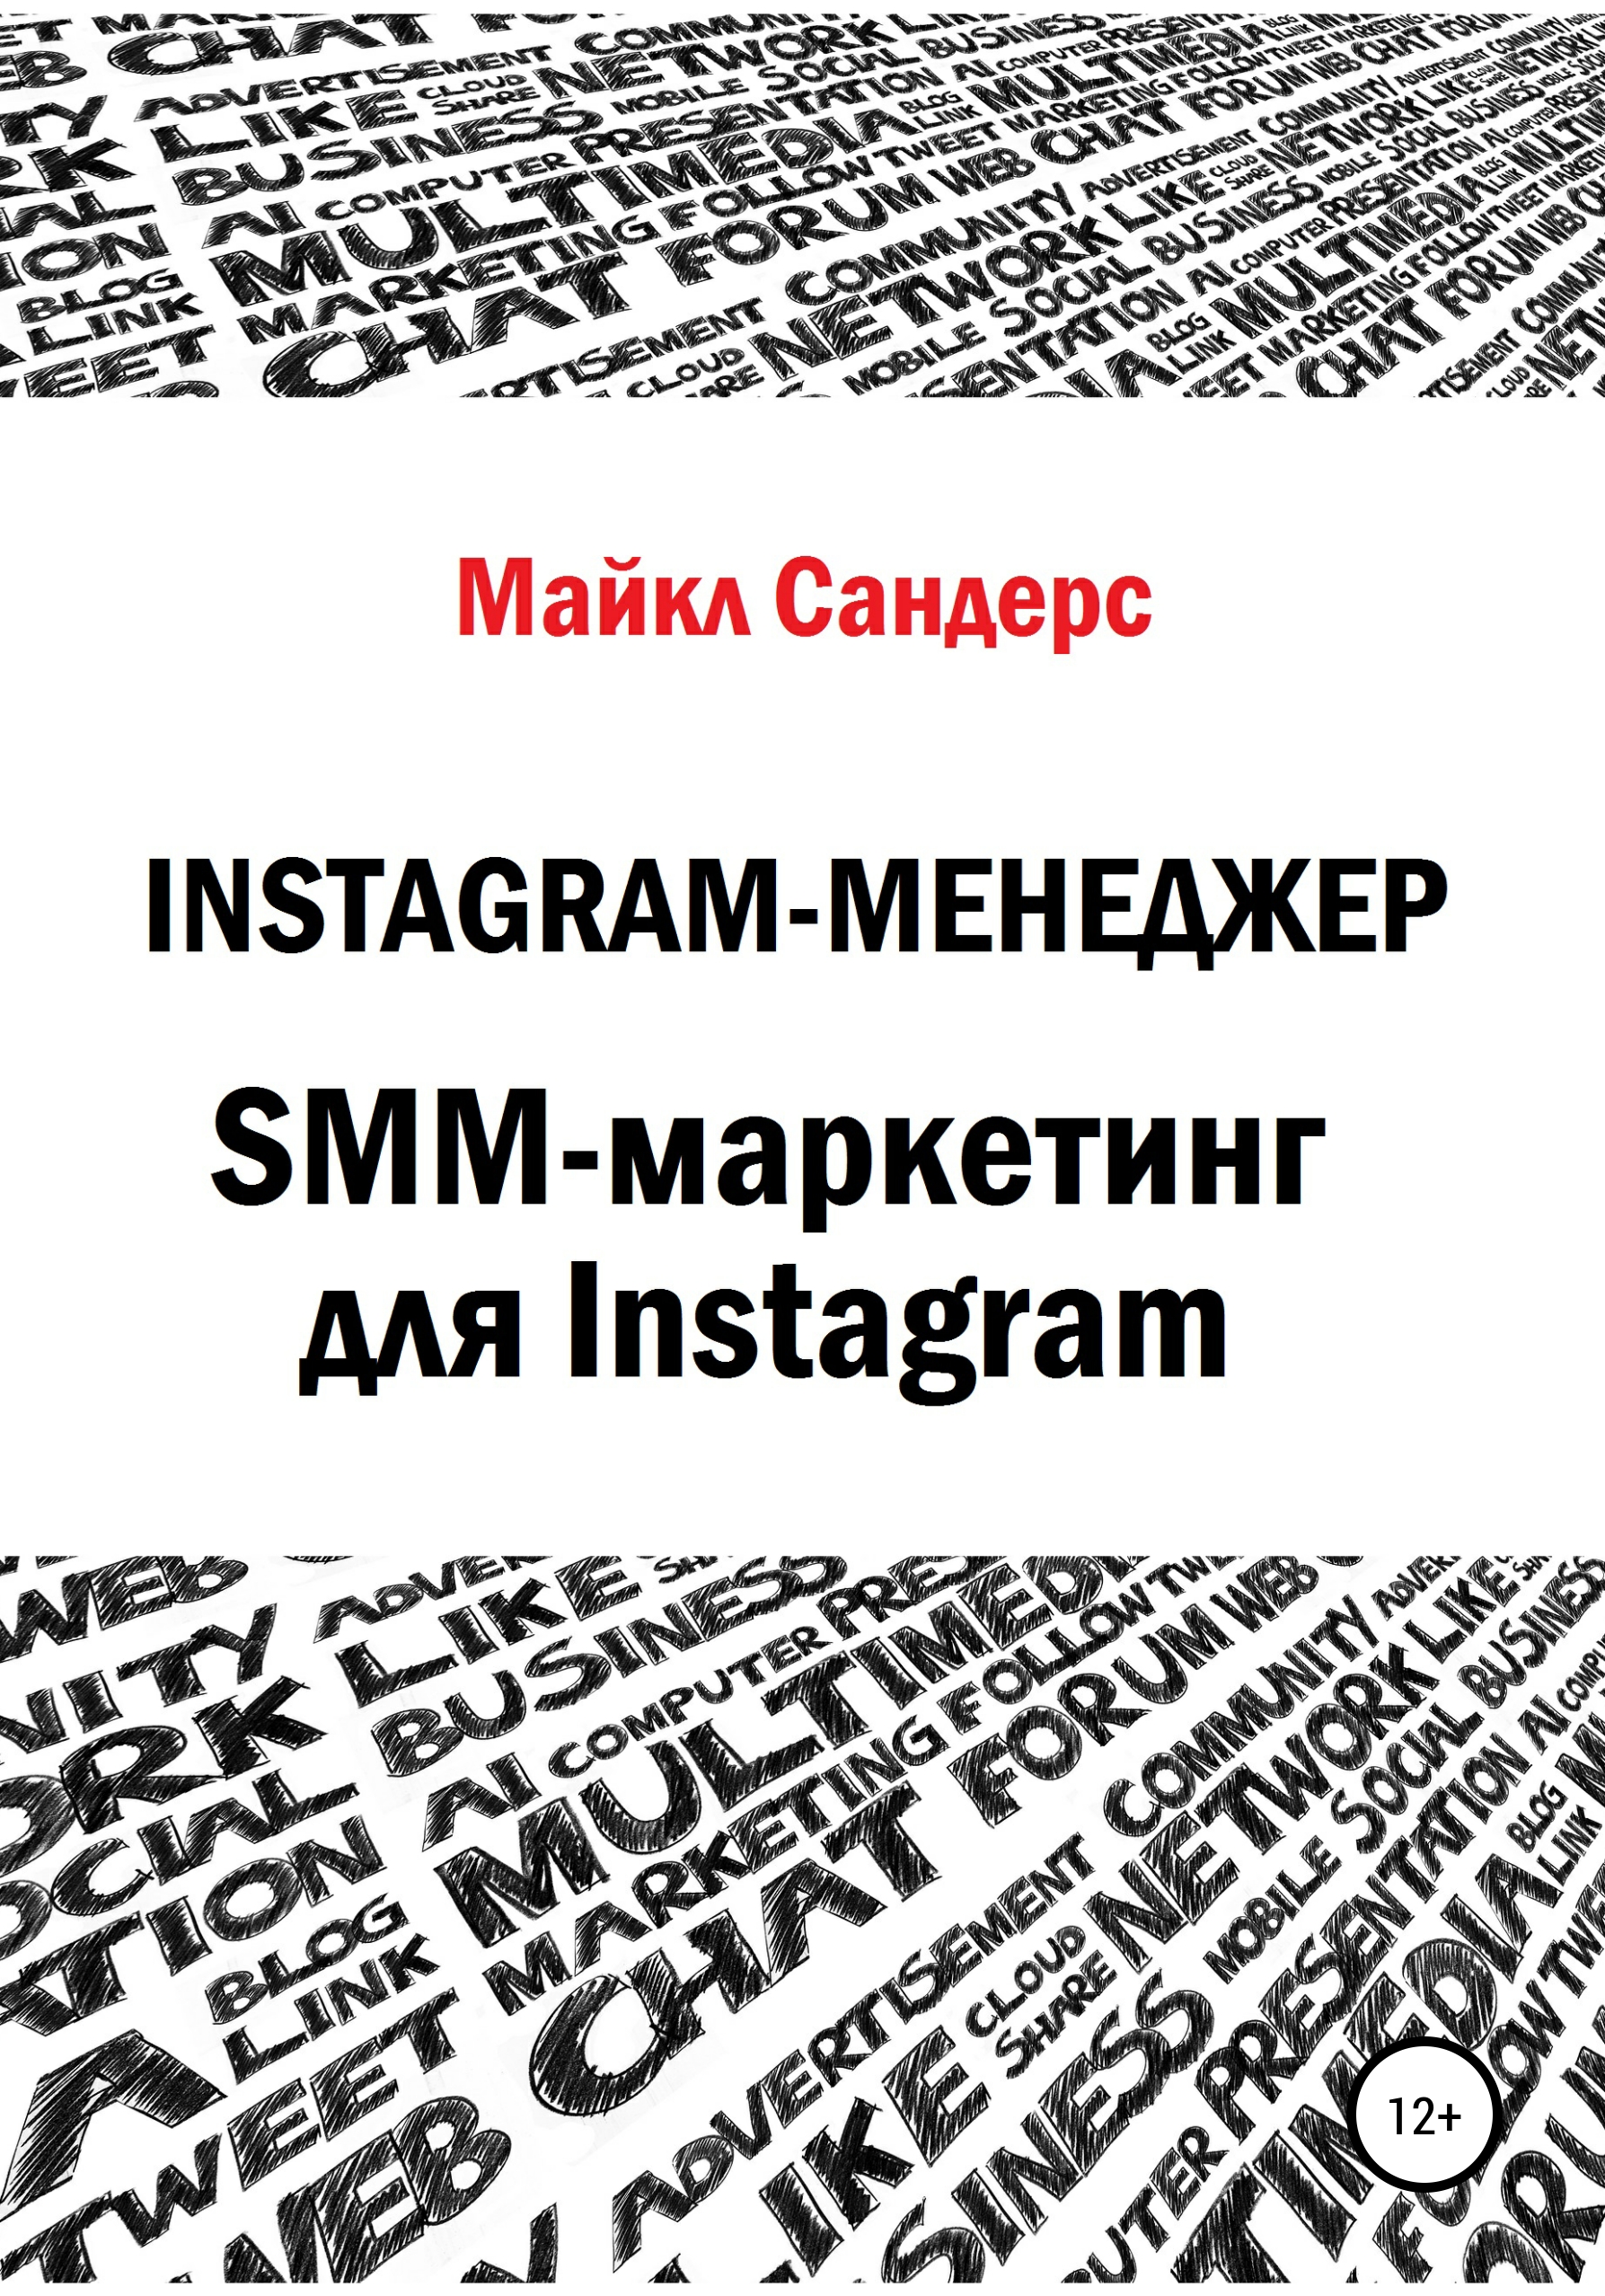 Книга  Instagram-менеджер. SMM-маркетинг для Instagram созданная Майкл Сандерс может относится к жанру интернет, интернет-маркетинг, маркетинг для новичков. Стоимость электронной книги Instagram-менеджер. SMM-маркетинг для Instagram с идентификатором 66592162 составляет 149.00 руб.